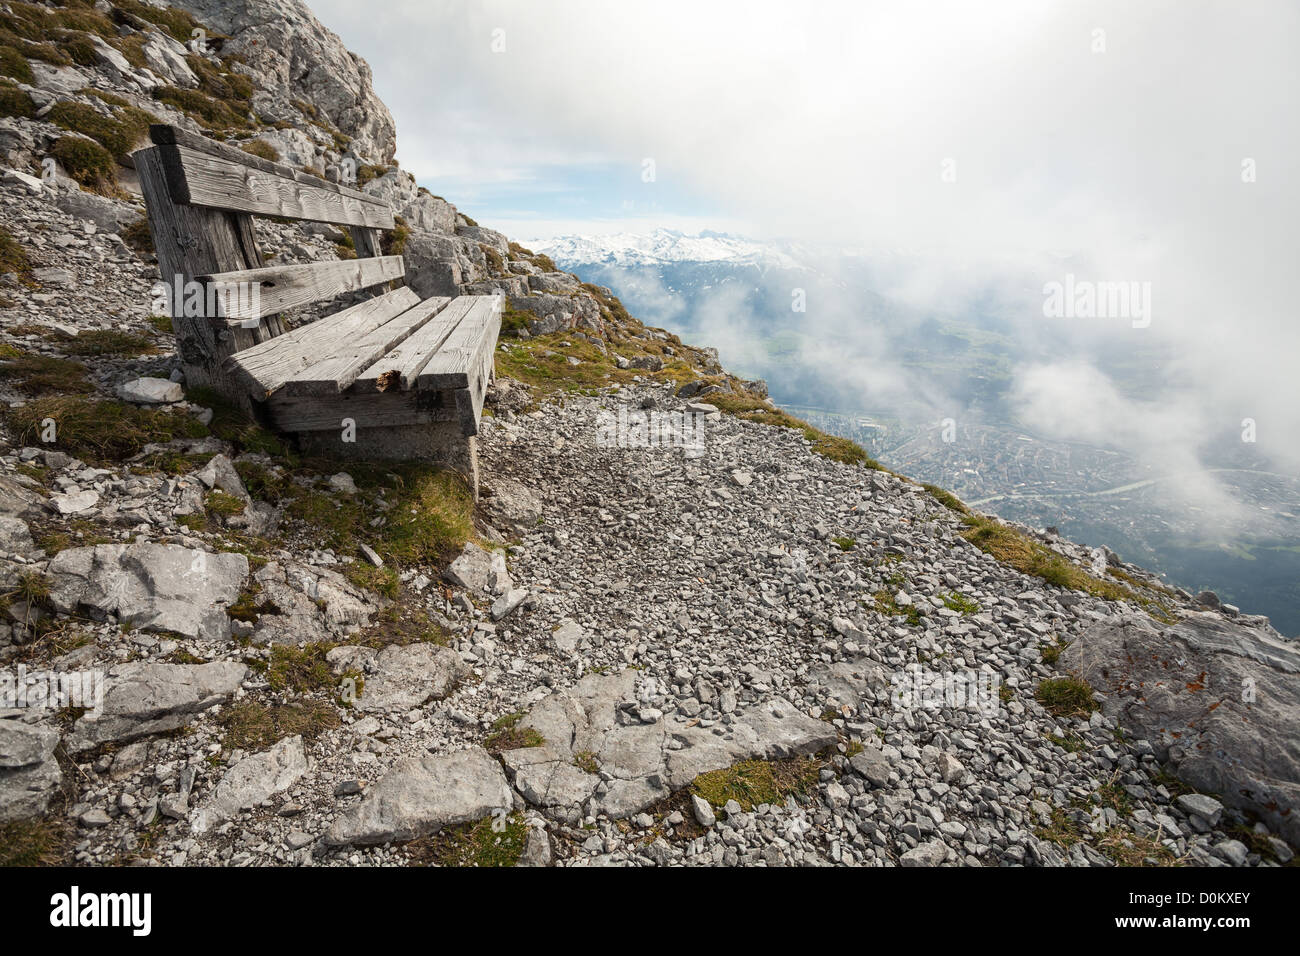 A sedile unico sul bordo di una montagna rocciosa che si affaccia su Innsbruck che è sotto le nuvole nella valle sottostante. Foto Stock